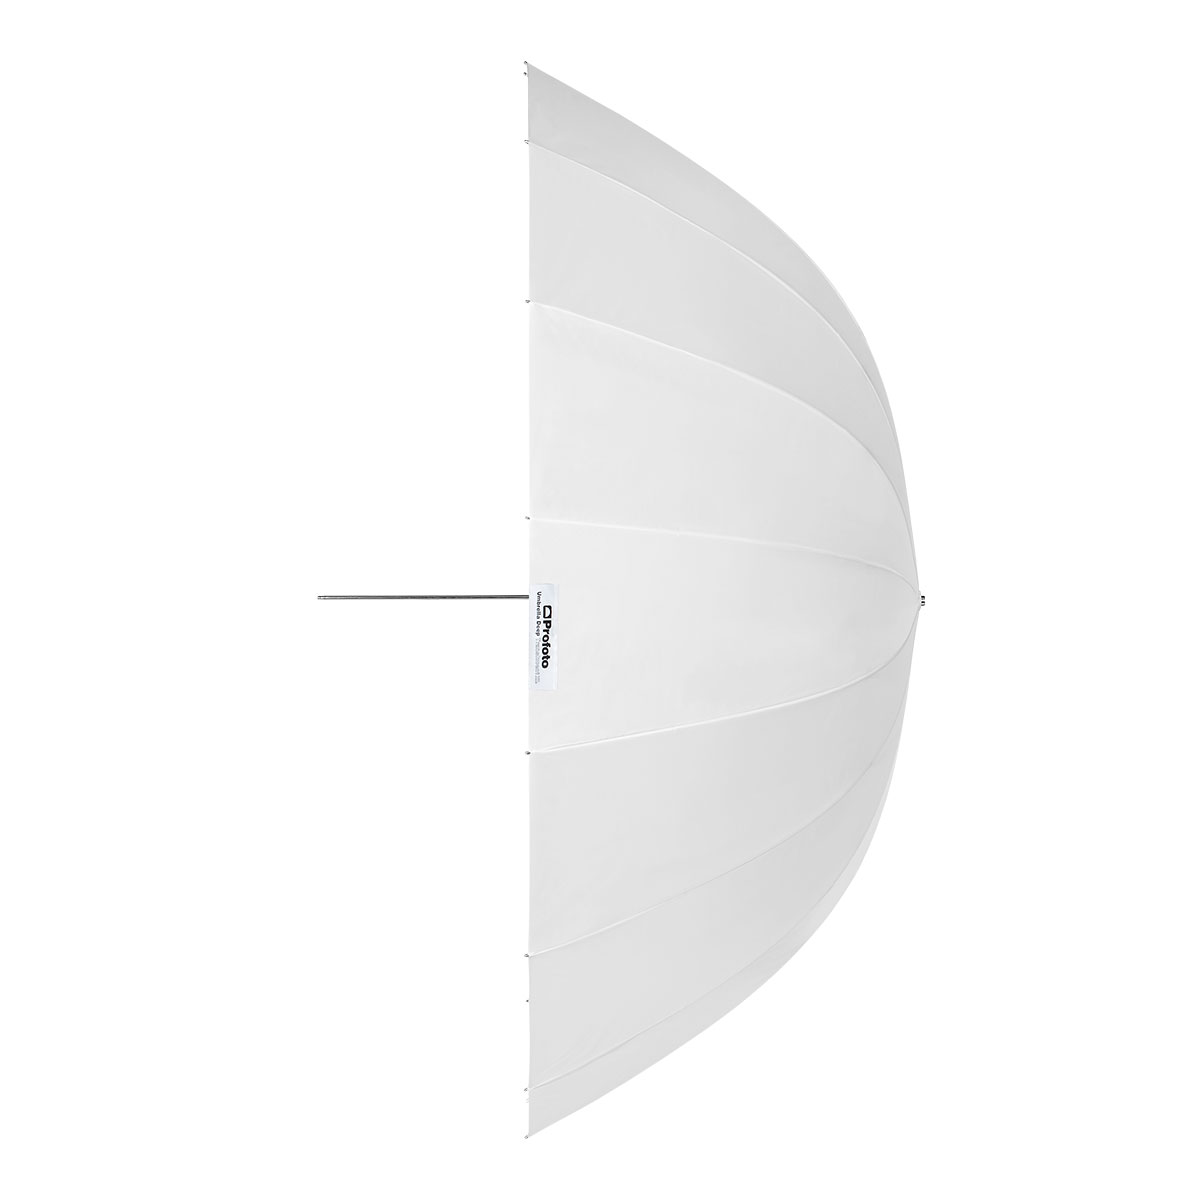 Umbrella_Deep_Translucent_XL